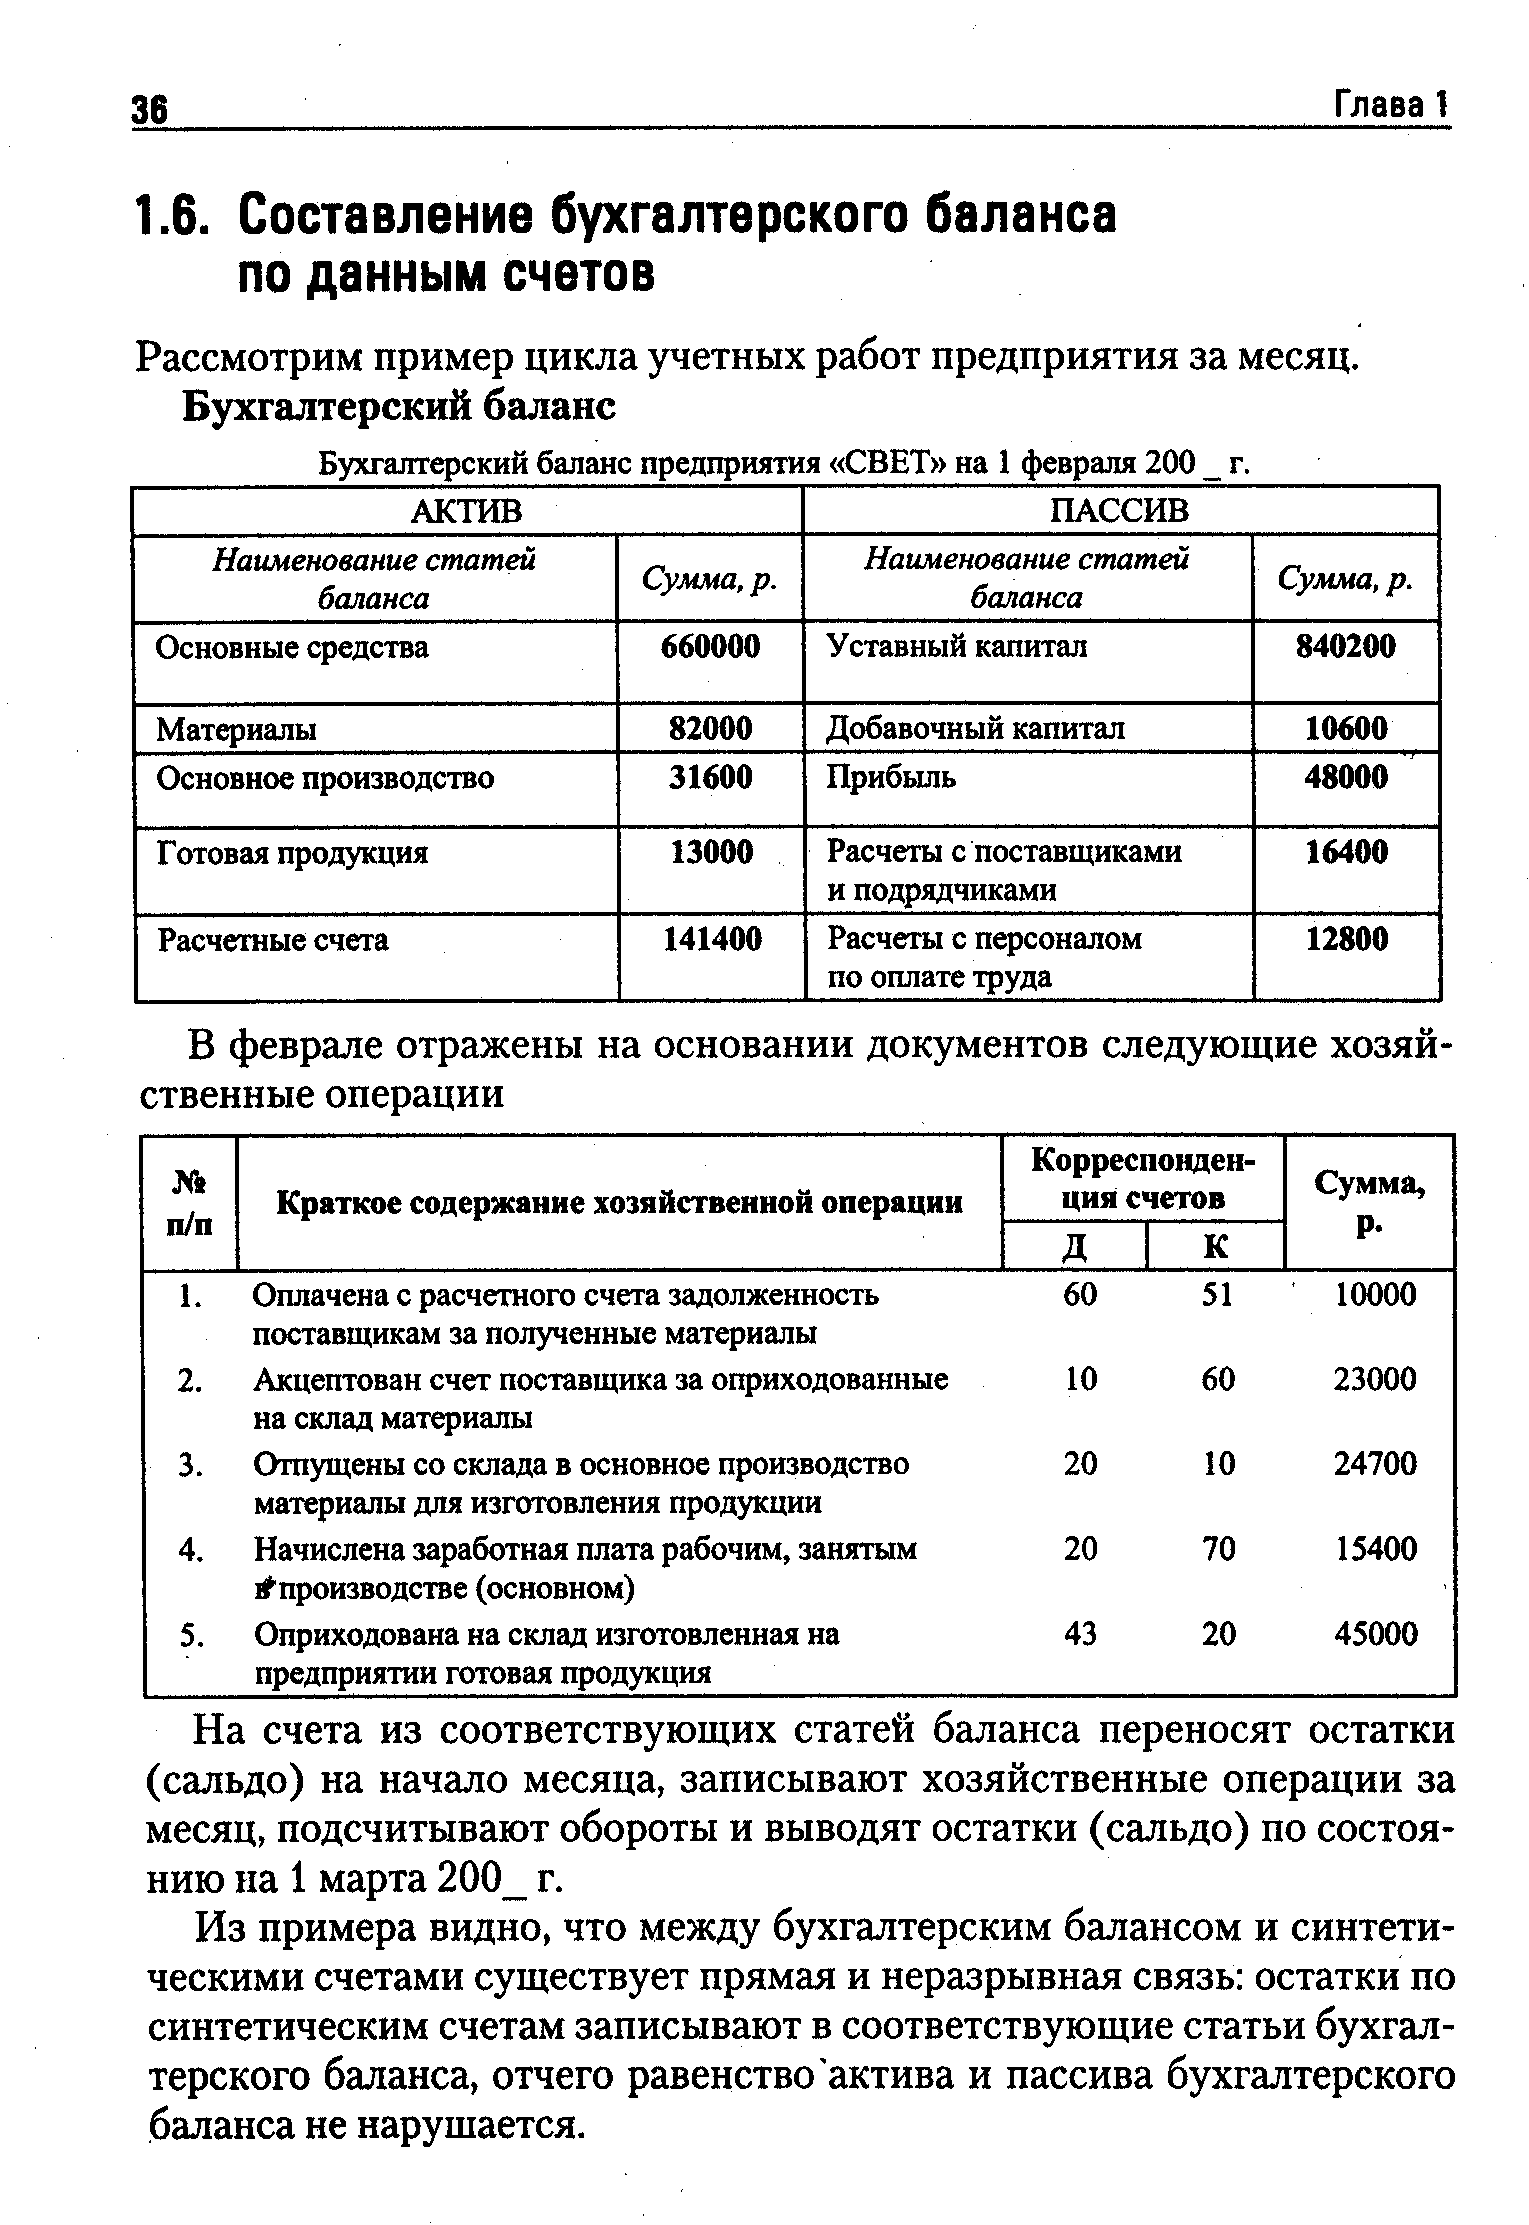 Бухгалтерский баланс предприятия СВЕТ на 1 февраля 200 г.
